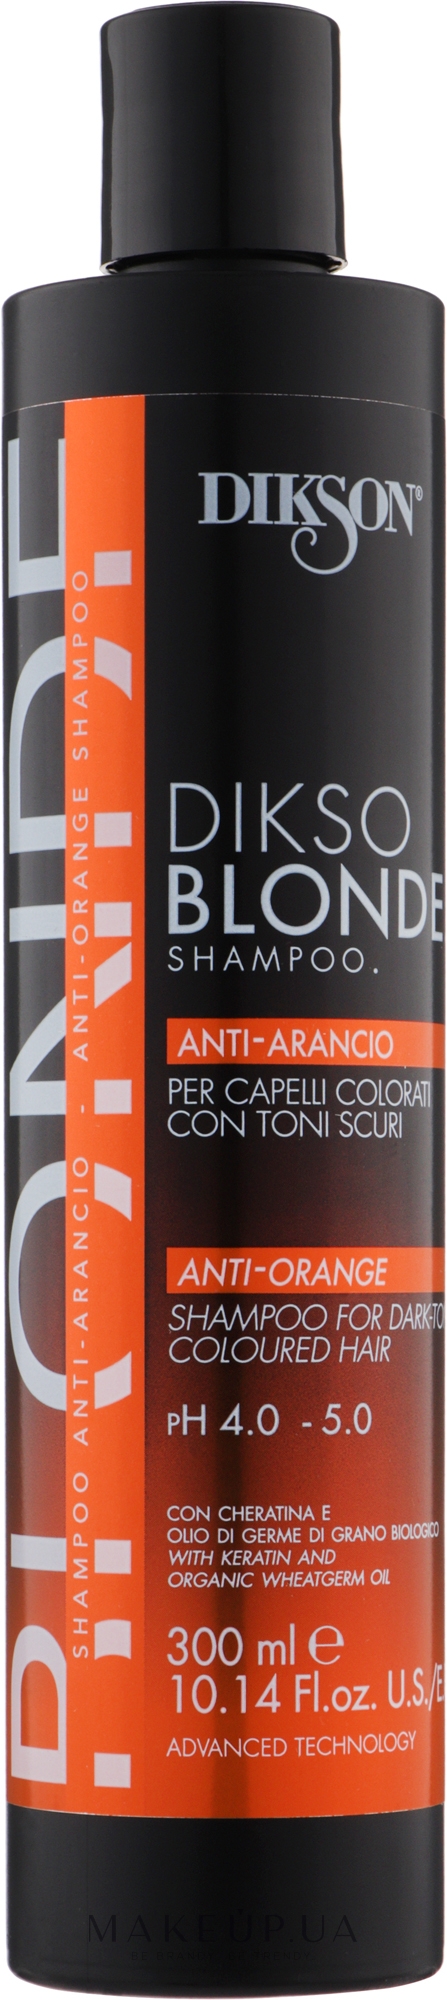 Шампунь-нейтрализатор оранжевого цвета при обесцвечивании/осветлении с низких УГТ - Dikson DiksoBlonde Anti-Arancio Shampoo — фото 300ml